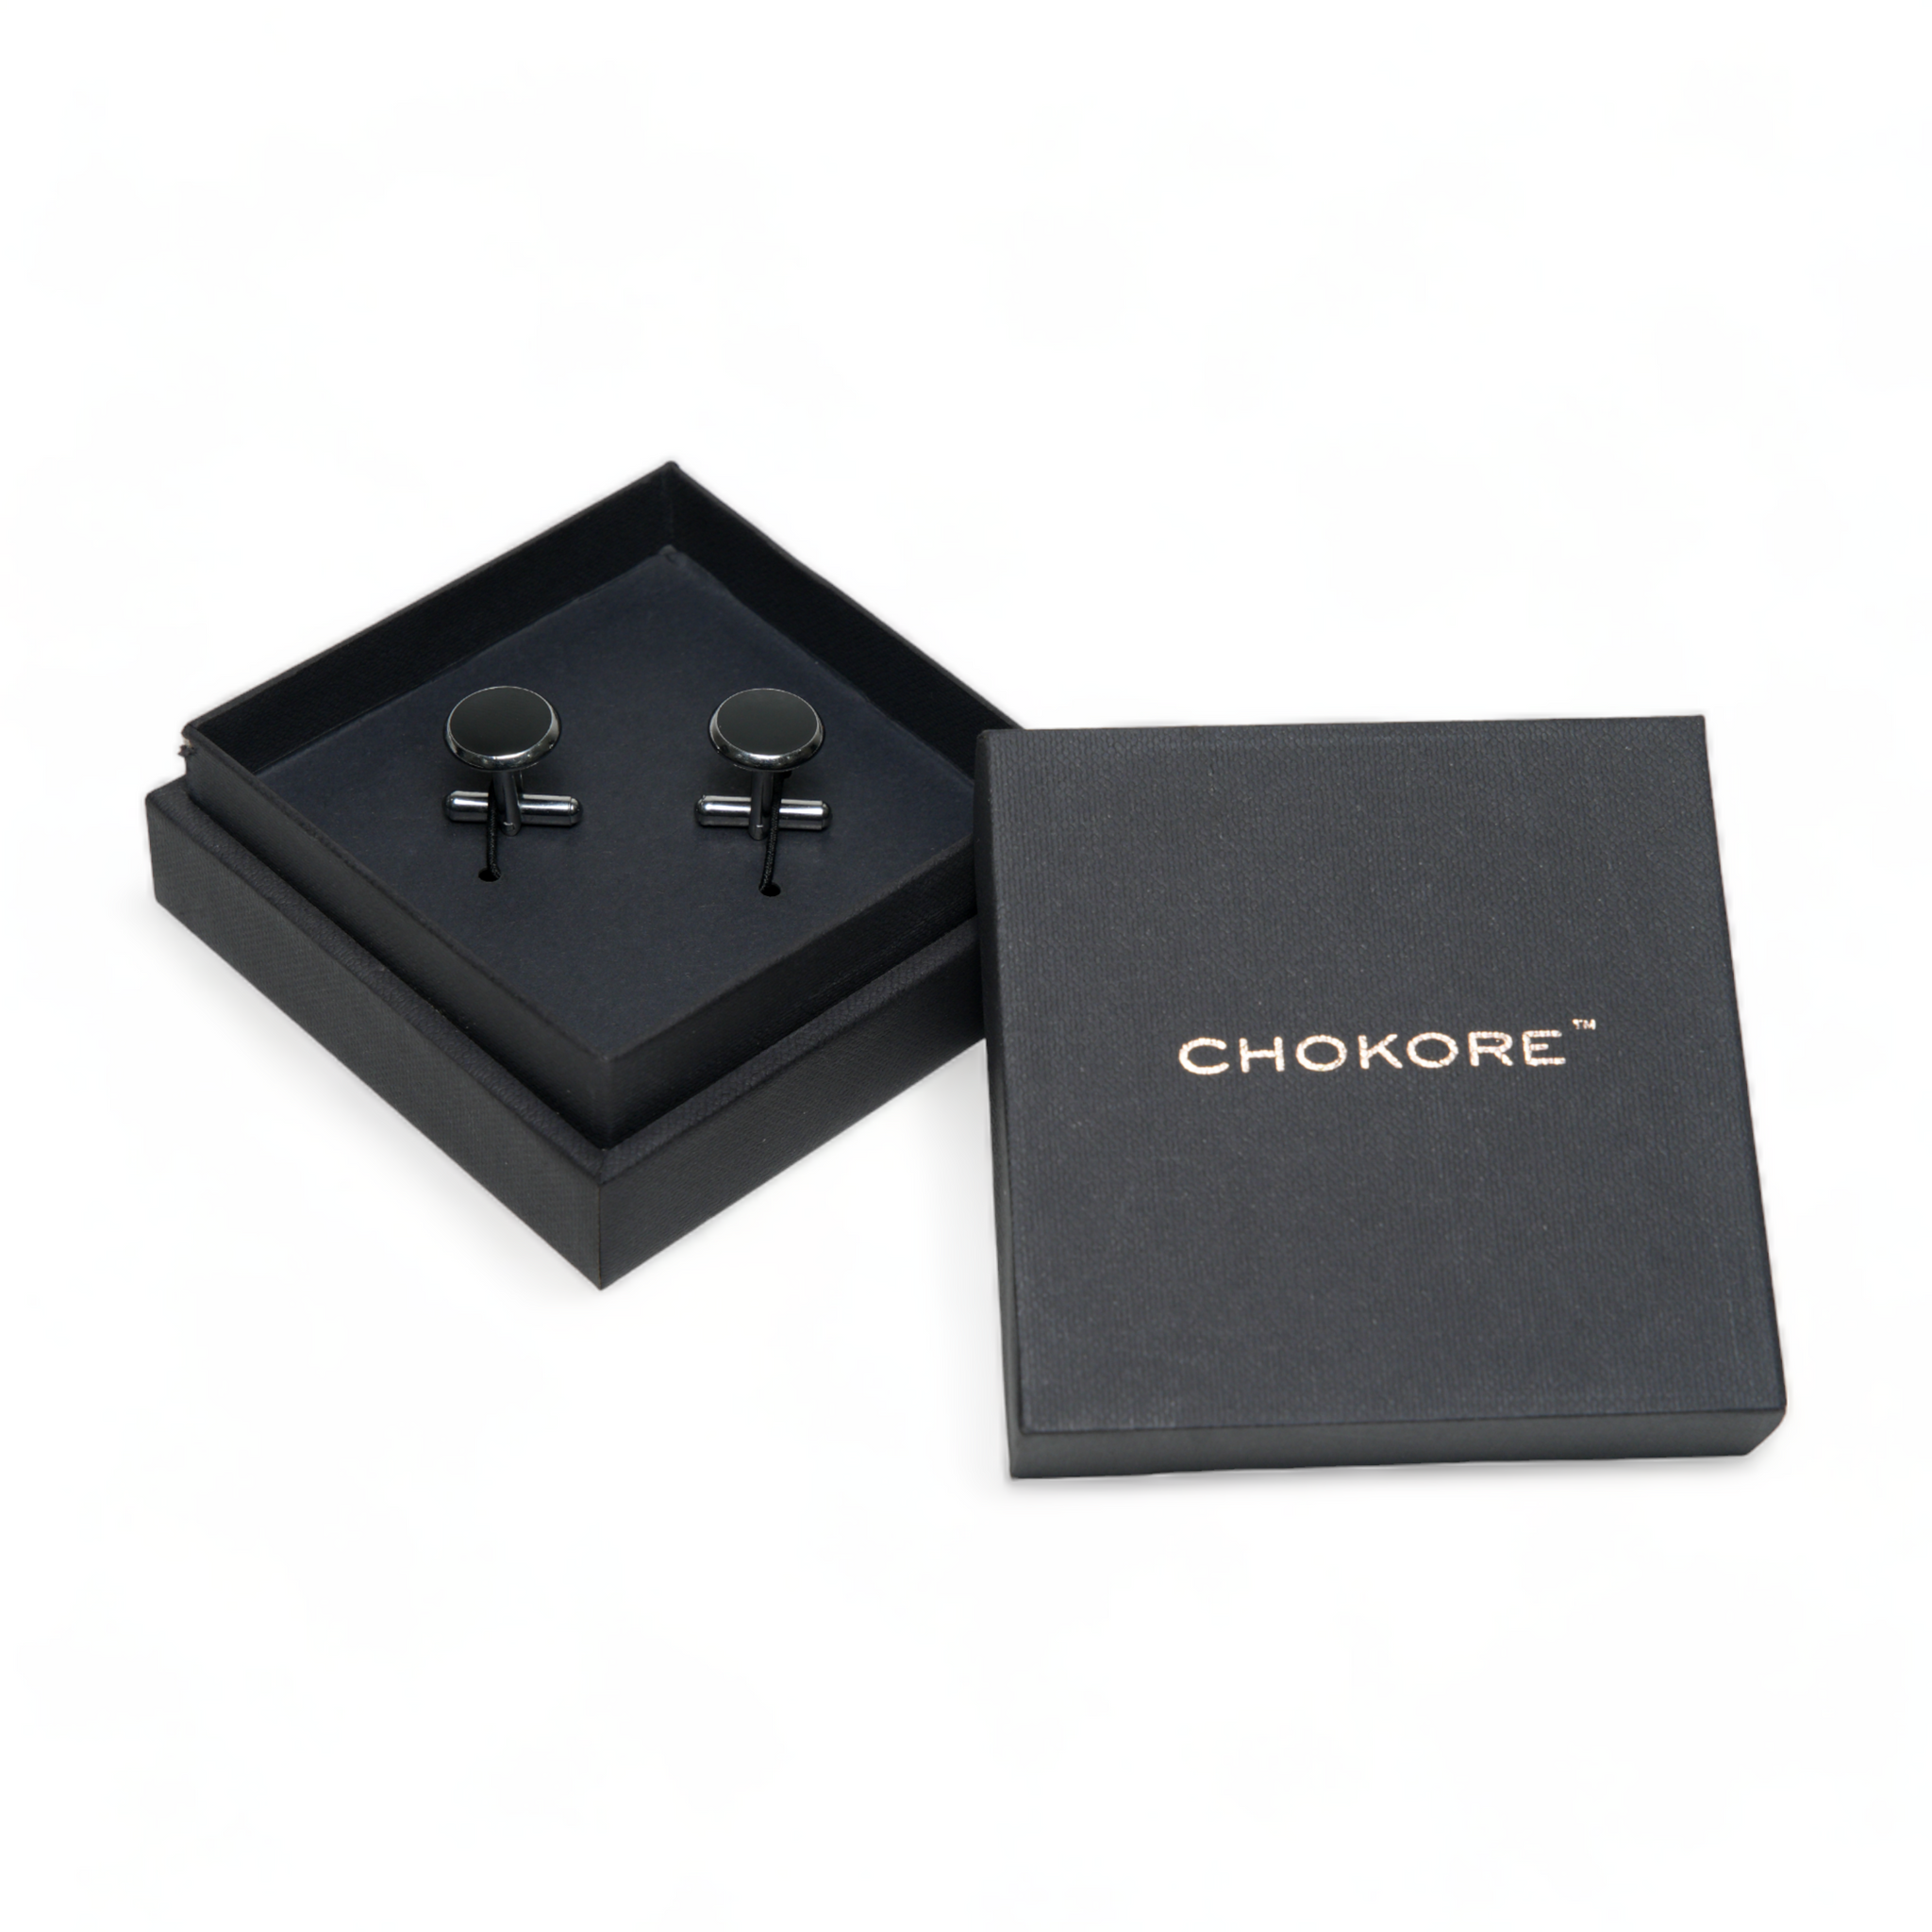 Chokore Round Silver Cufflinks (Black)